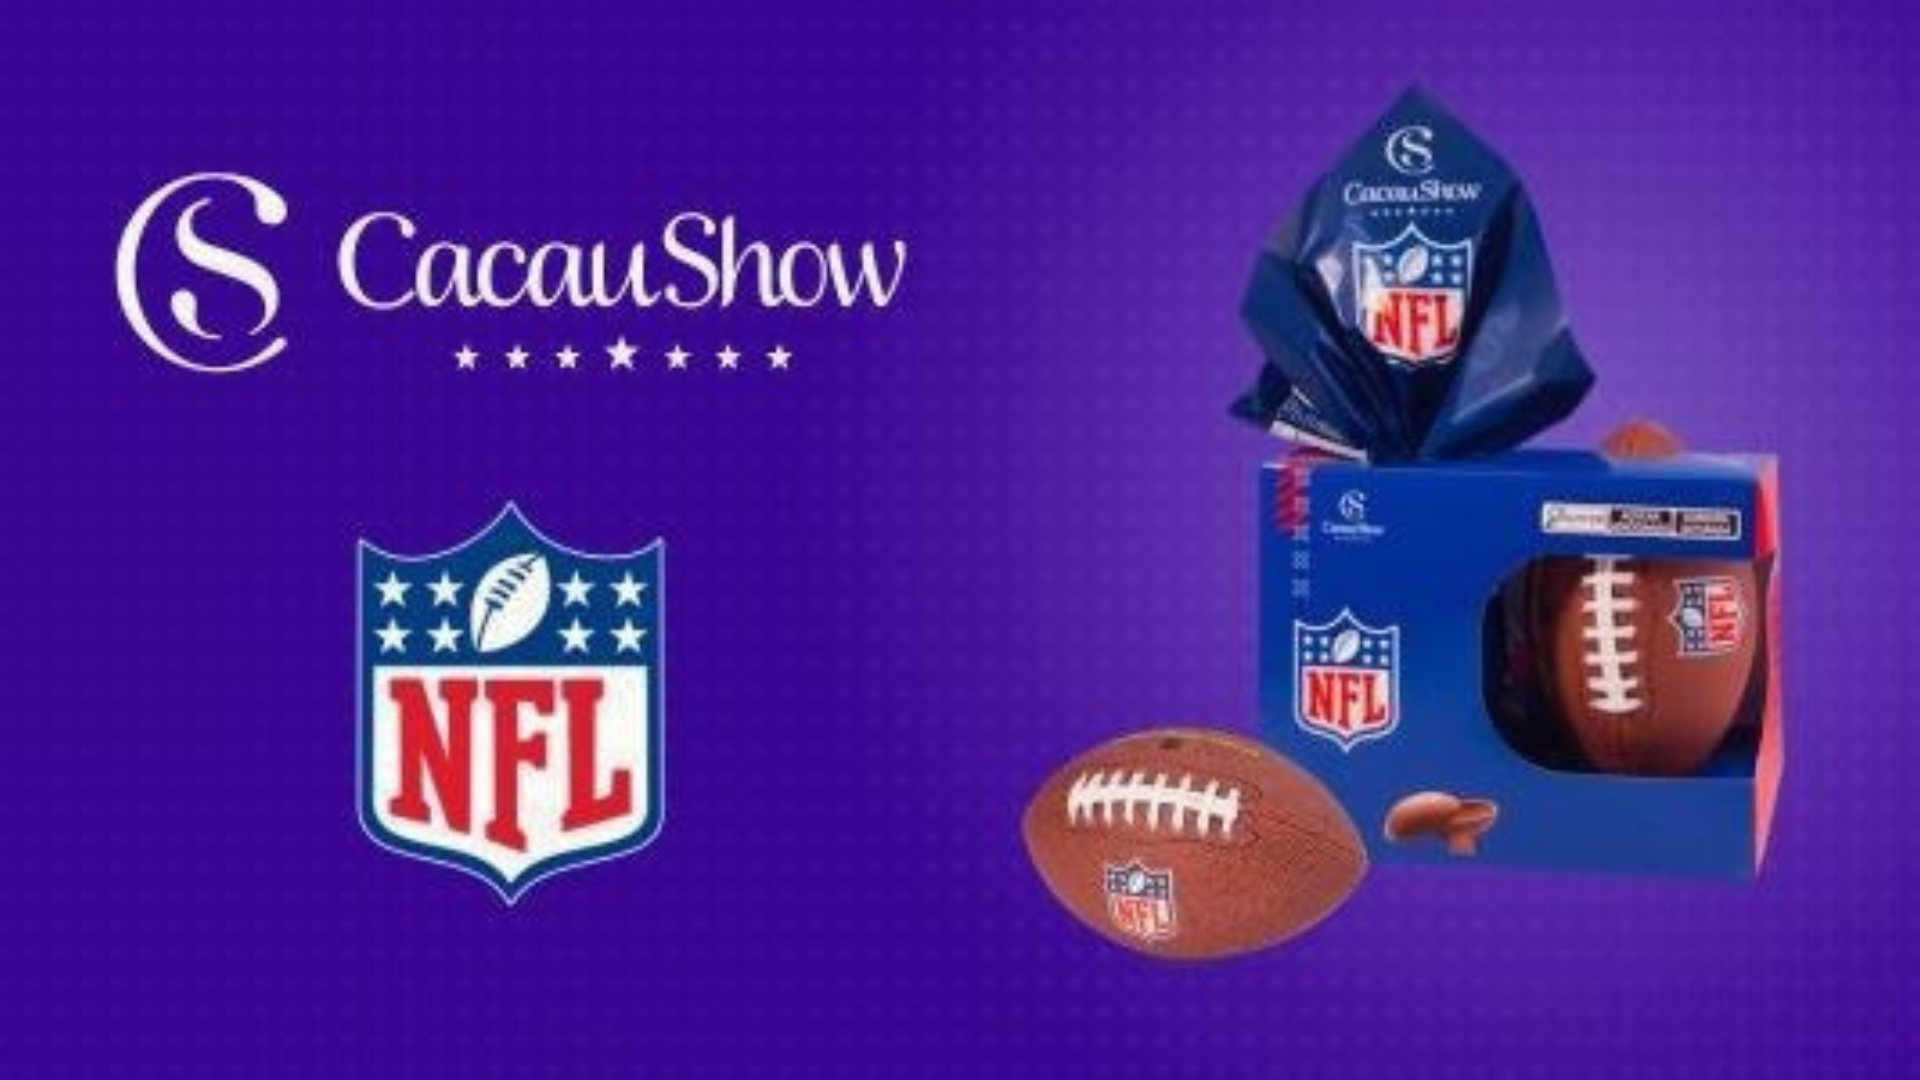 Cacau Show e NFL anunciam parceria de licenciamento